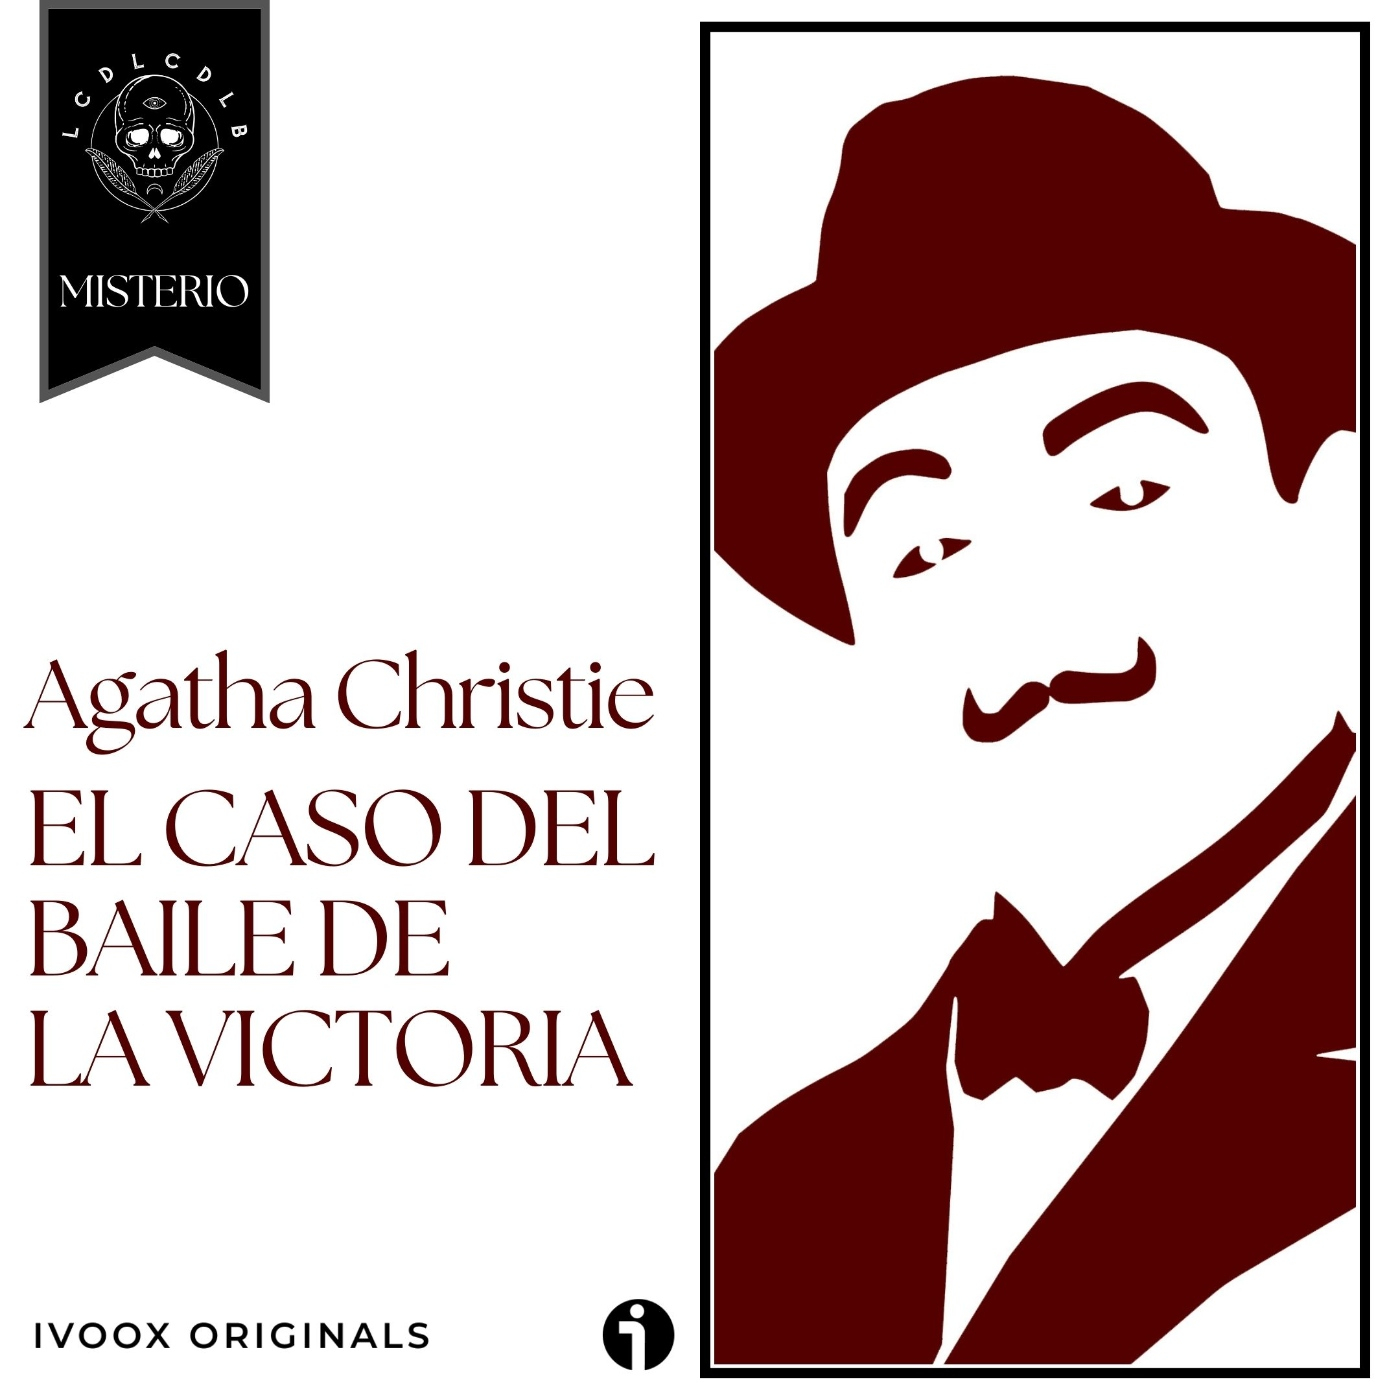 EXTRA: El caso del baile de la victoria, de Agatha Christie (versión audiolibro, sólo voz) - Episodio exclusivo para mecenas